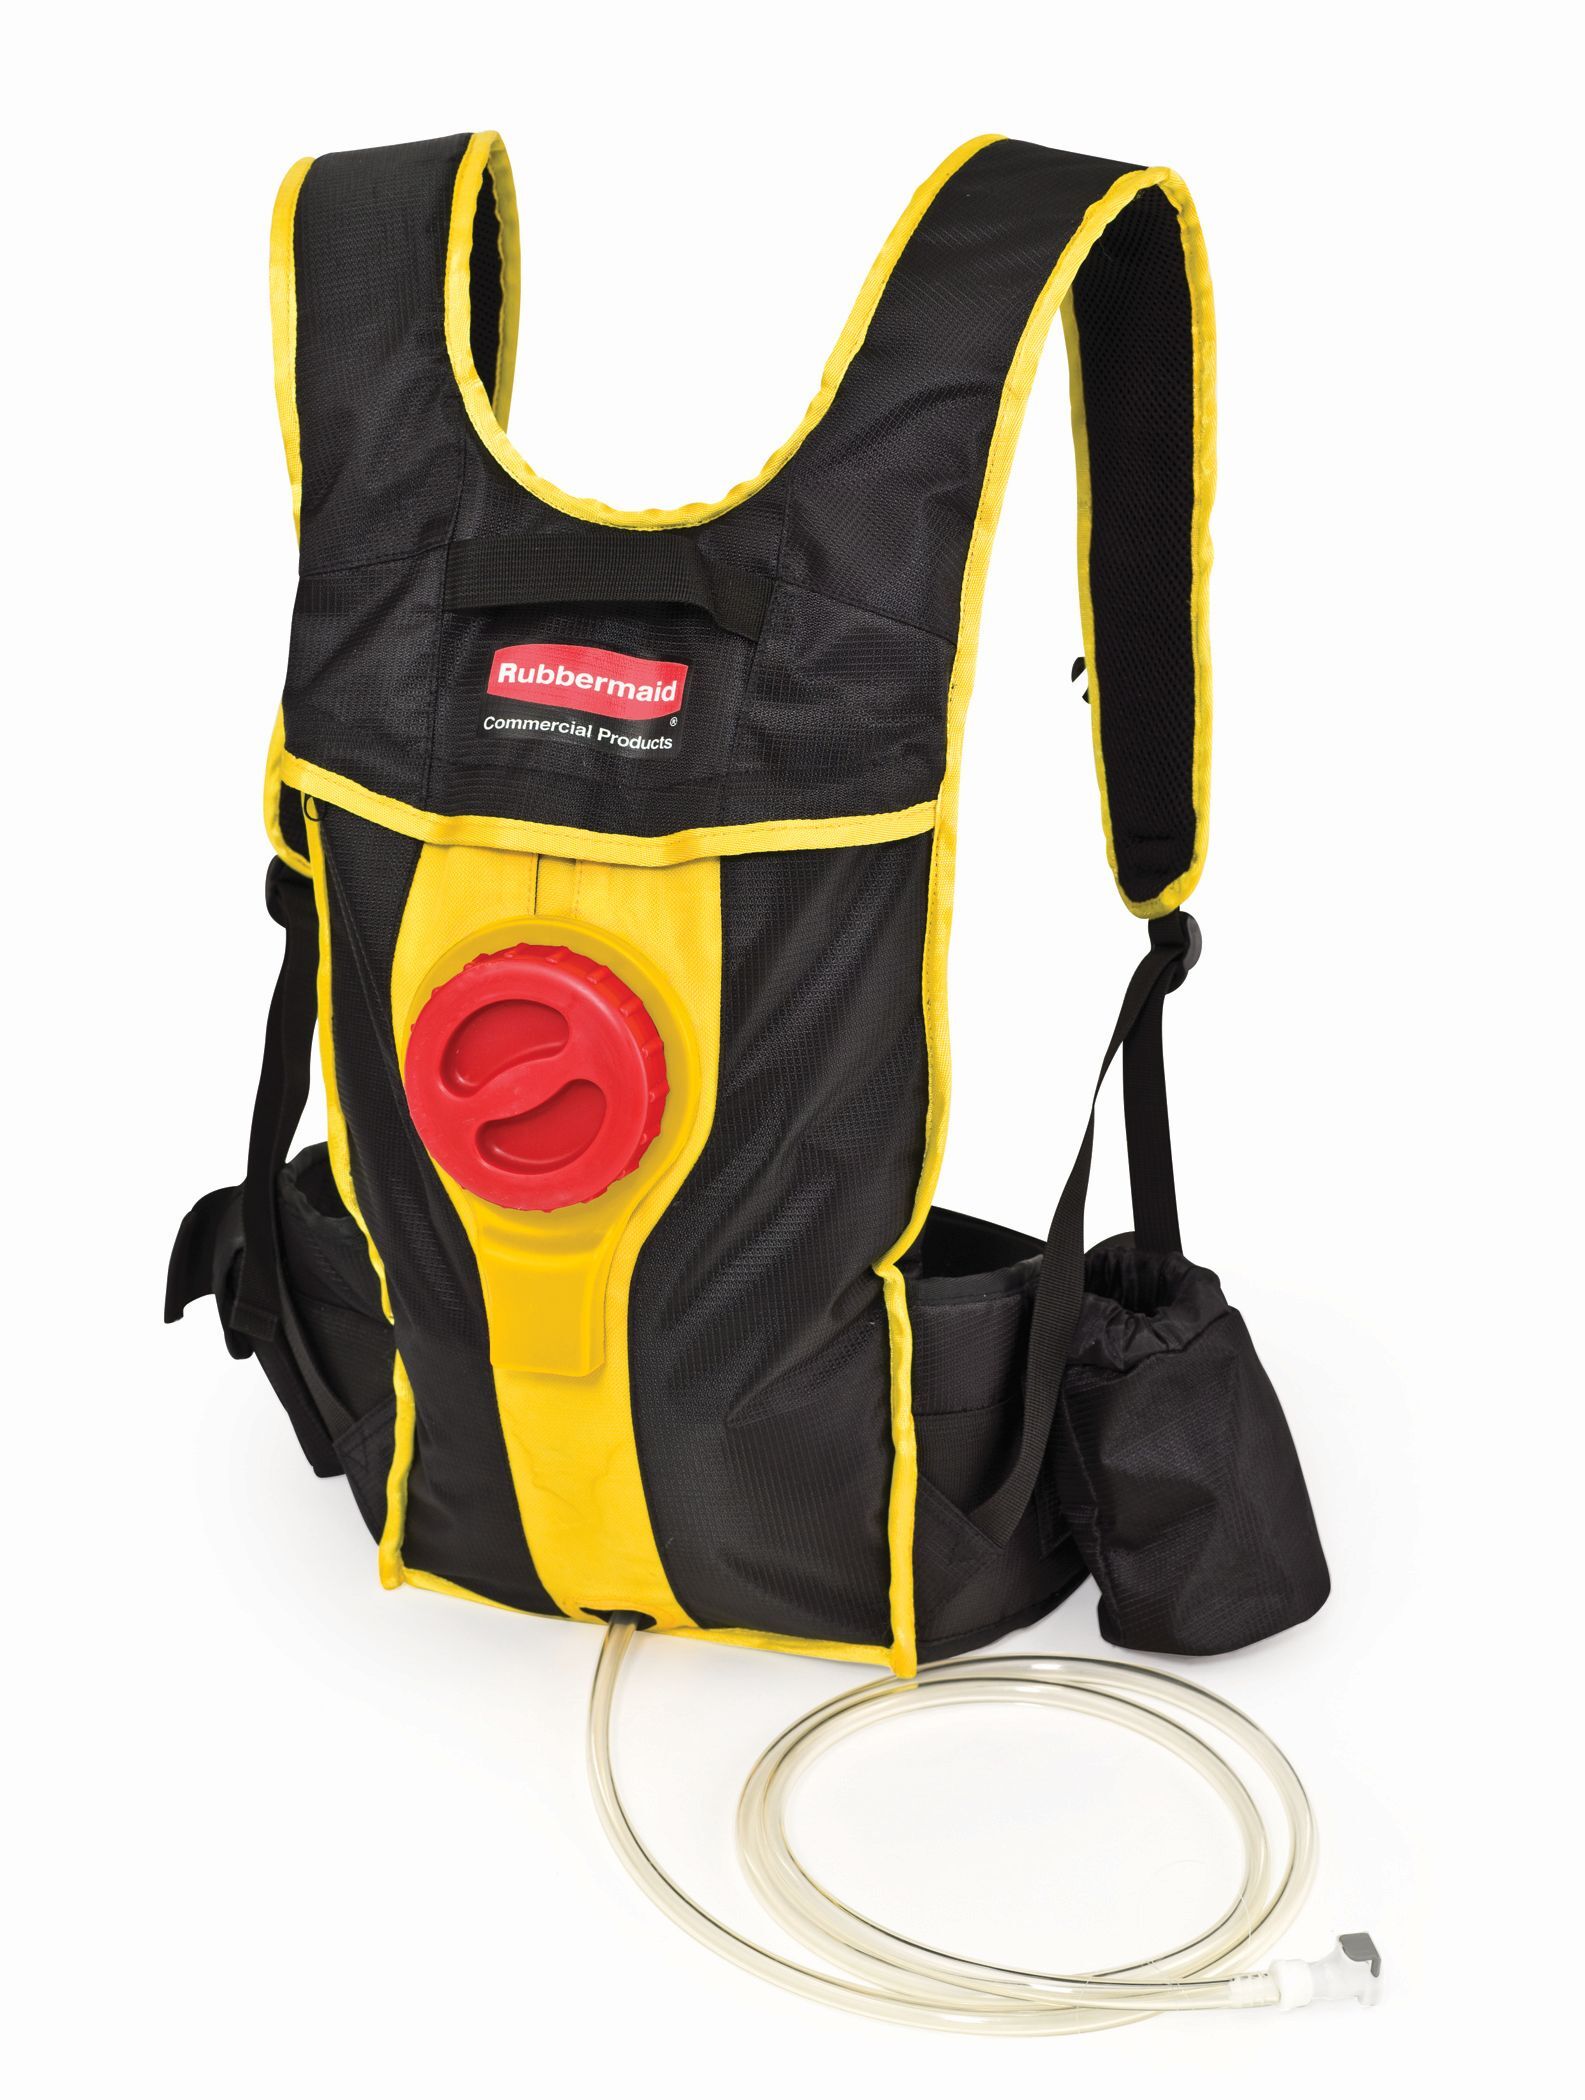 Rubbermaid Flow Backpack, Rubbermaid, model: VB 182909, zwart, geel